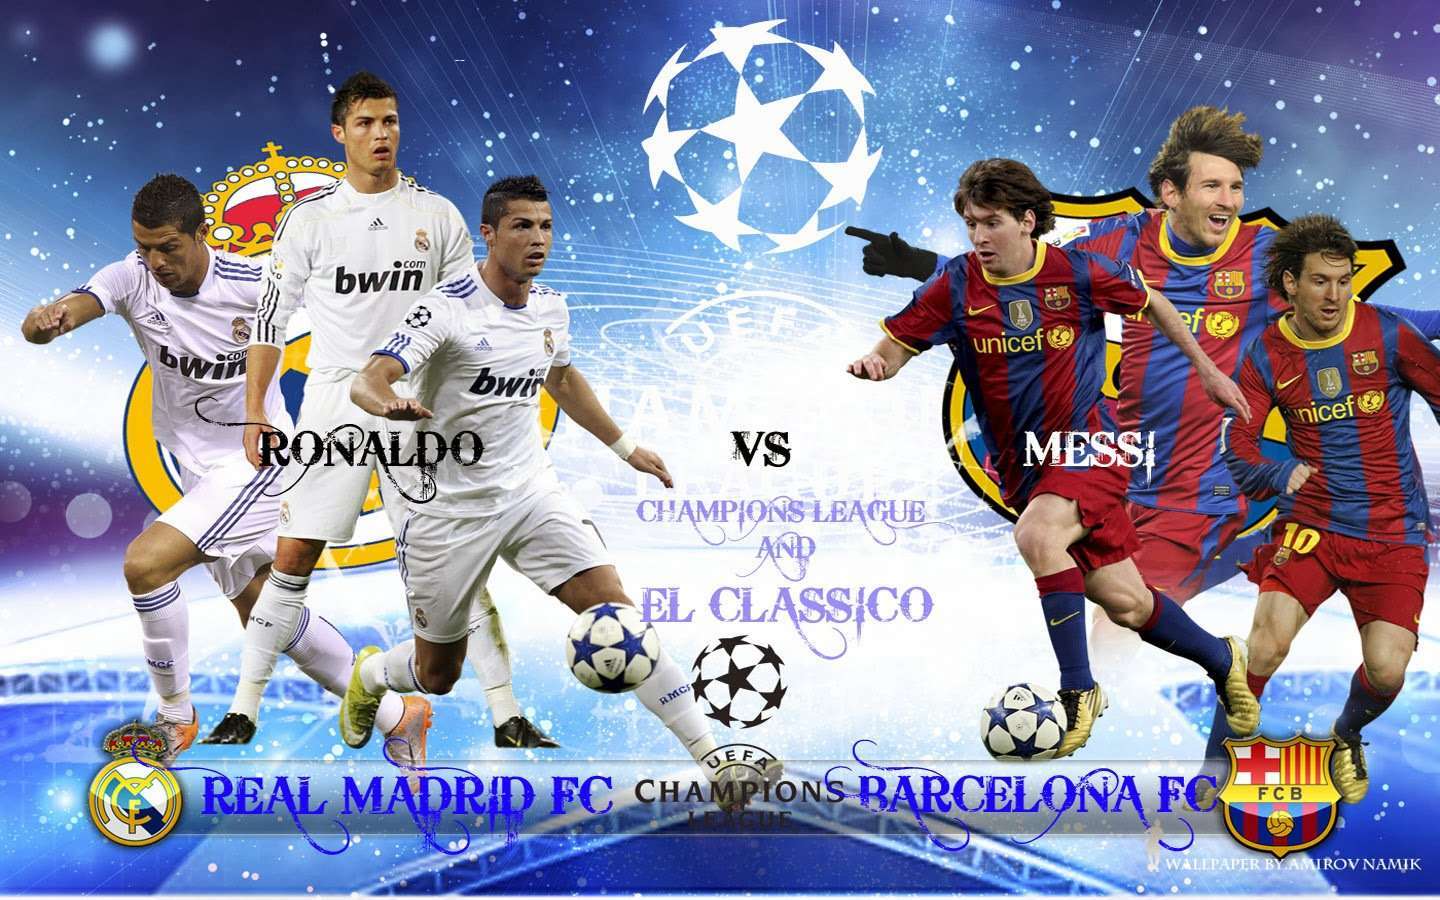 Photos Messi Vs Ronaldo Wallpaper